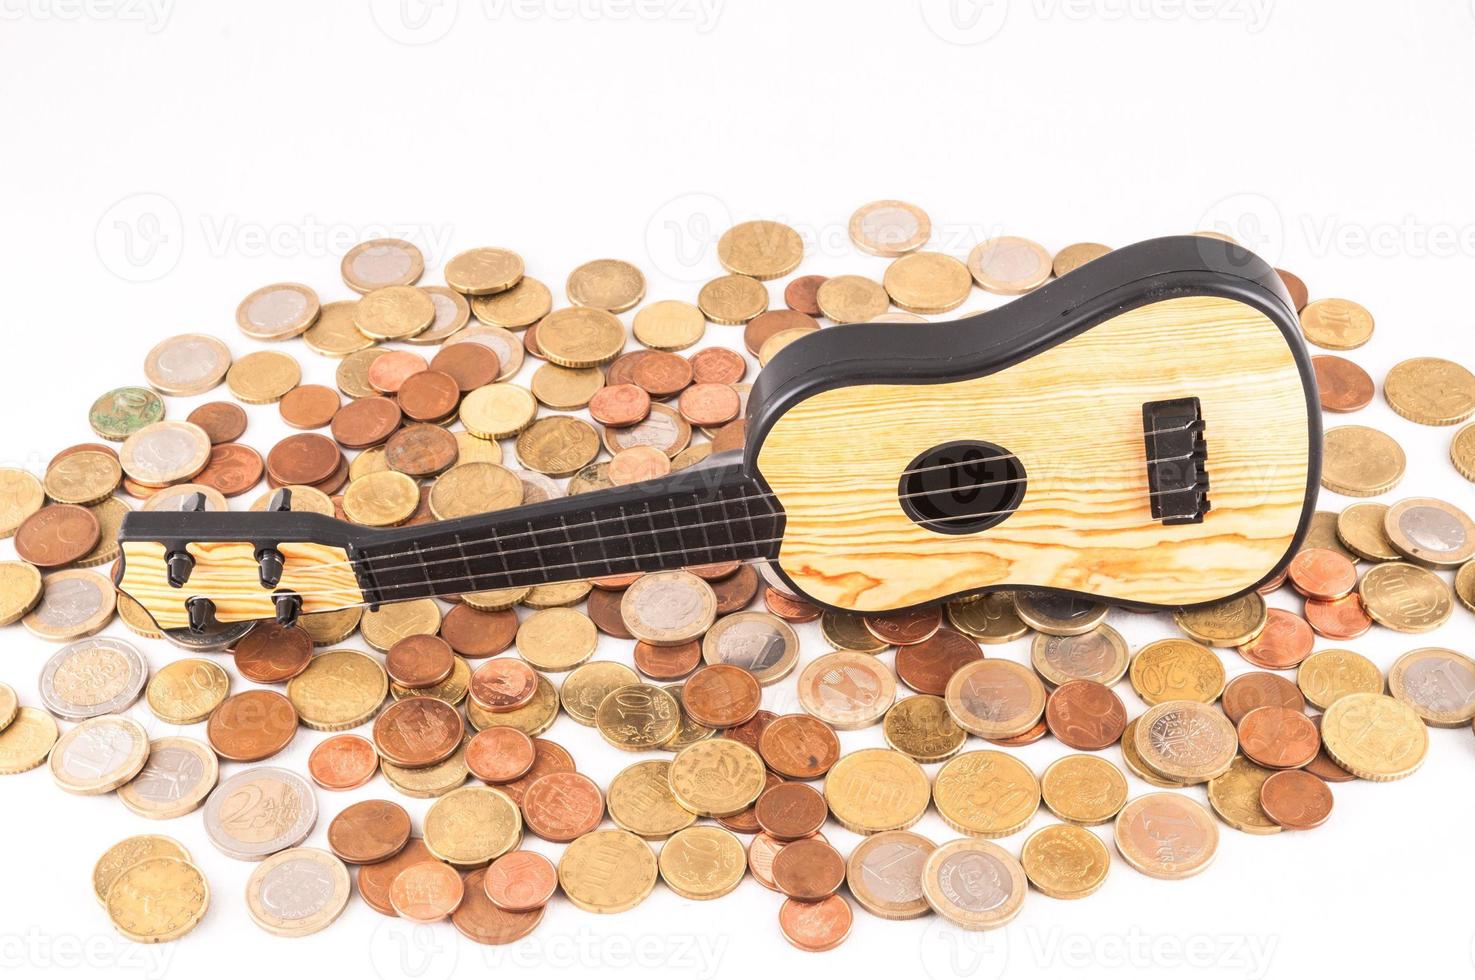 guitare sur pile de pièces de monnaie photo